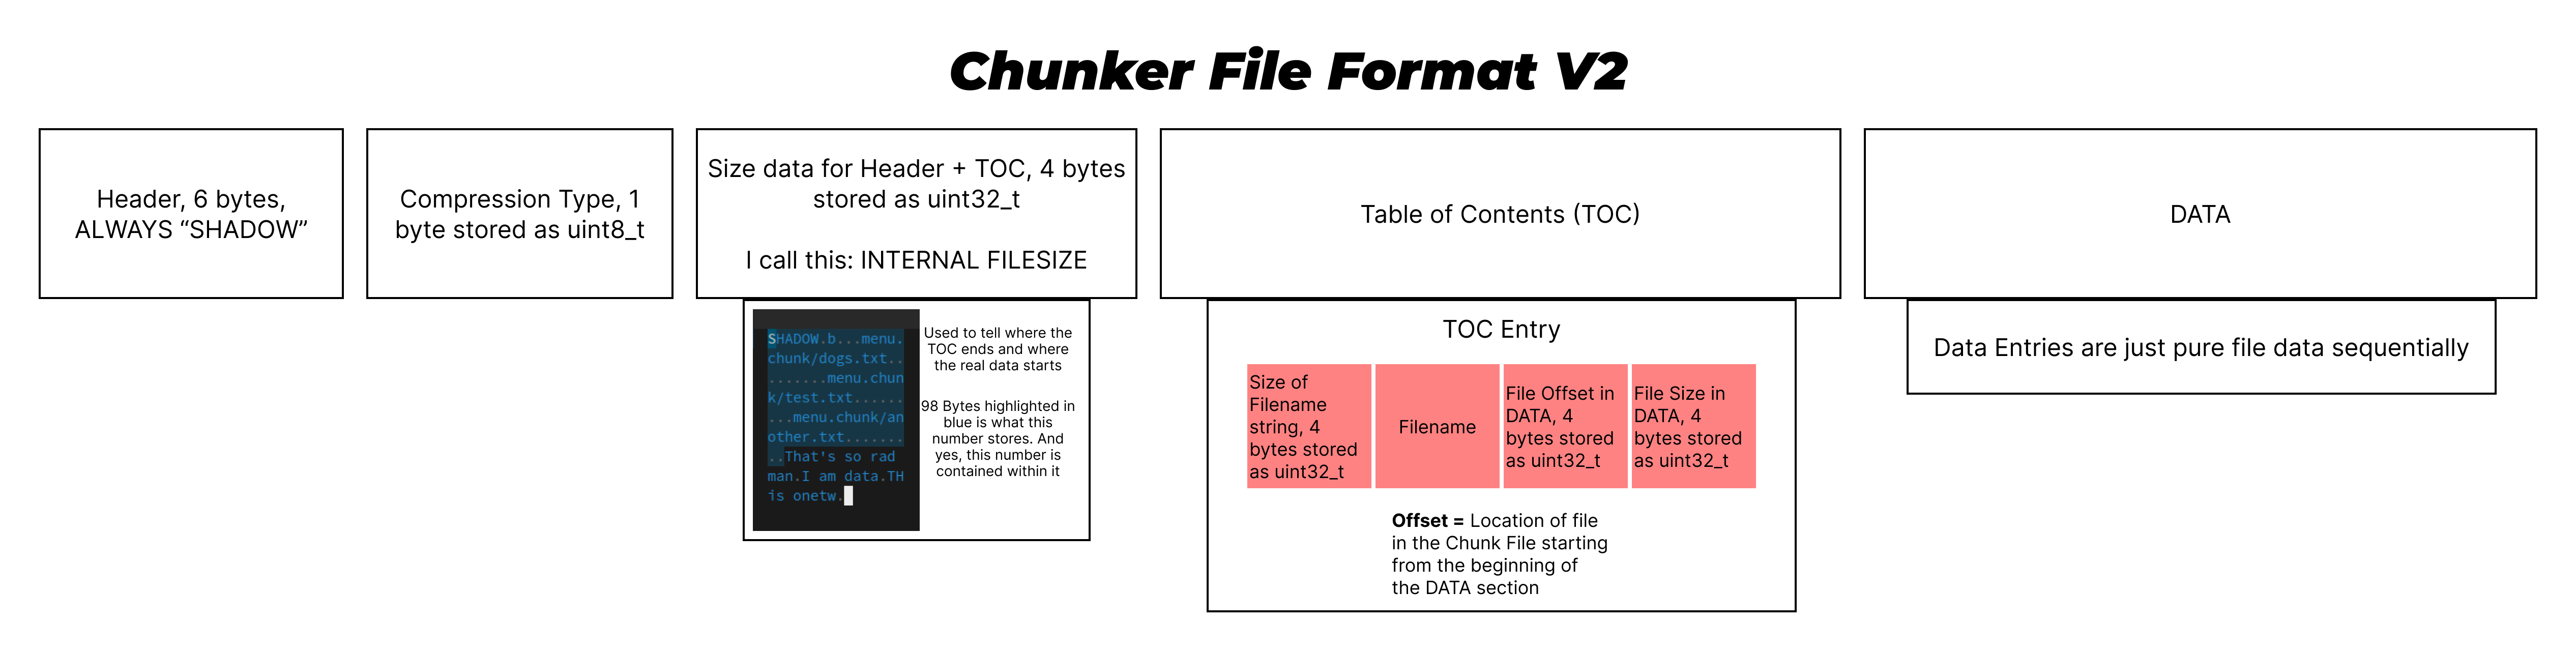 Chunker File Format